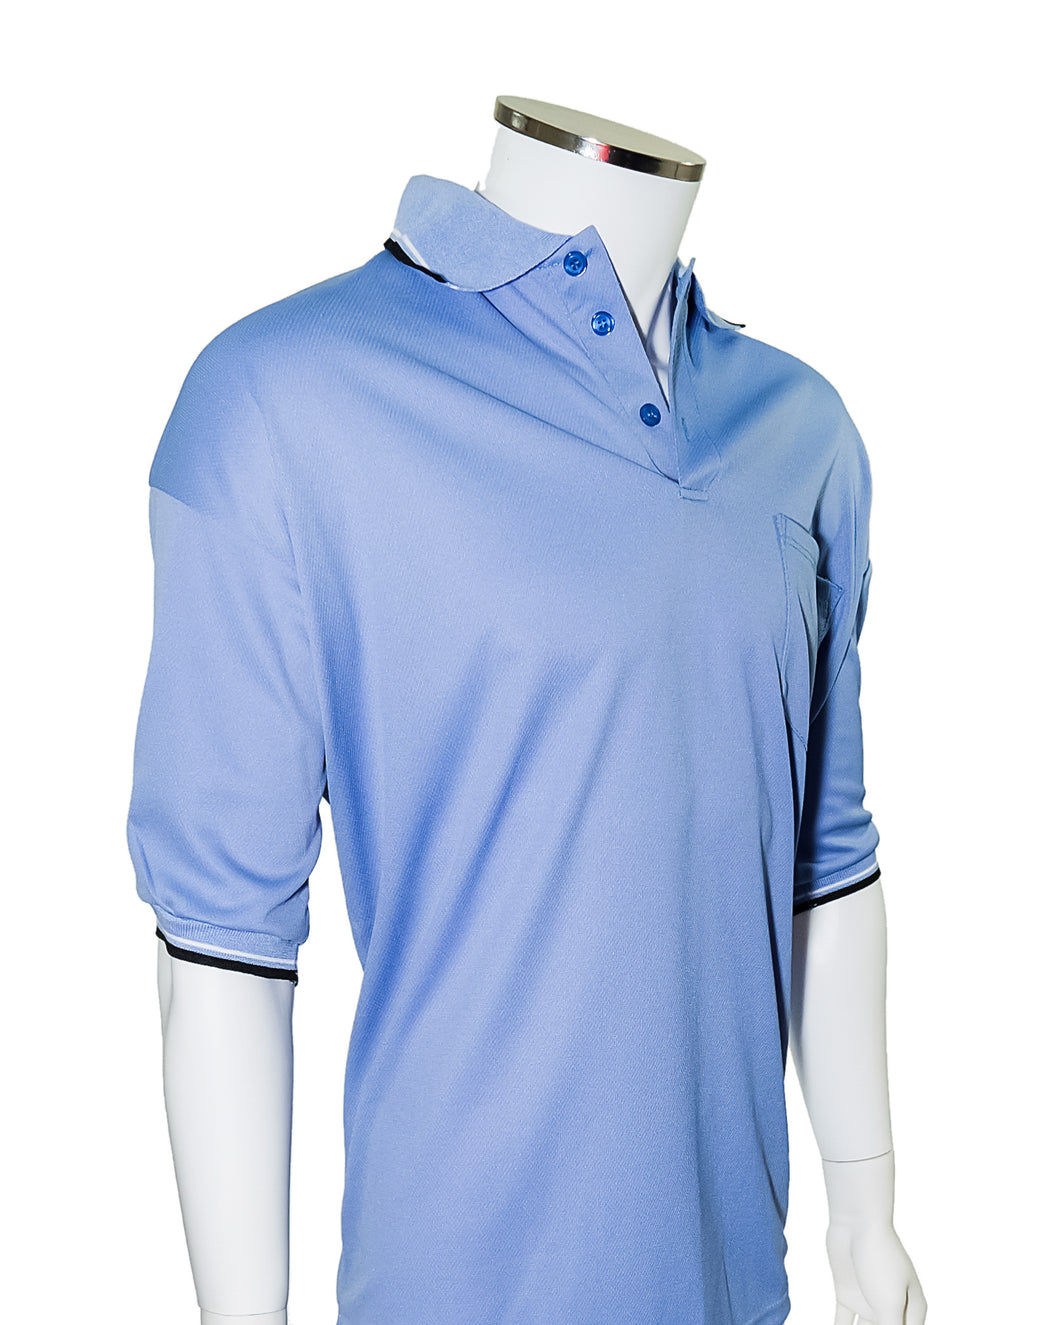 Major League Umpire Shirt - Powder Blue  (CLEARANCE) - Officials Depot